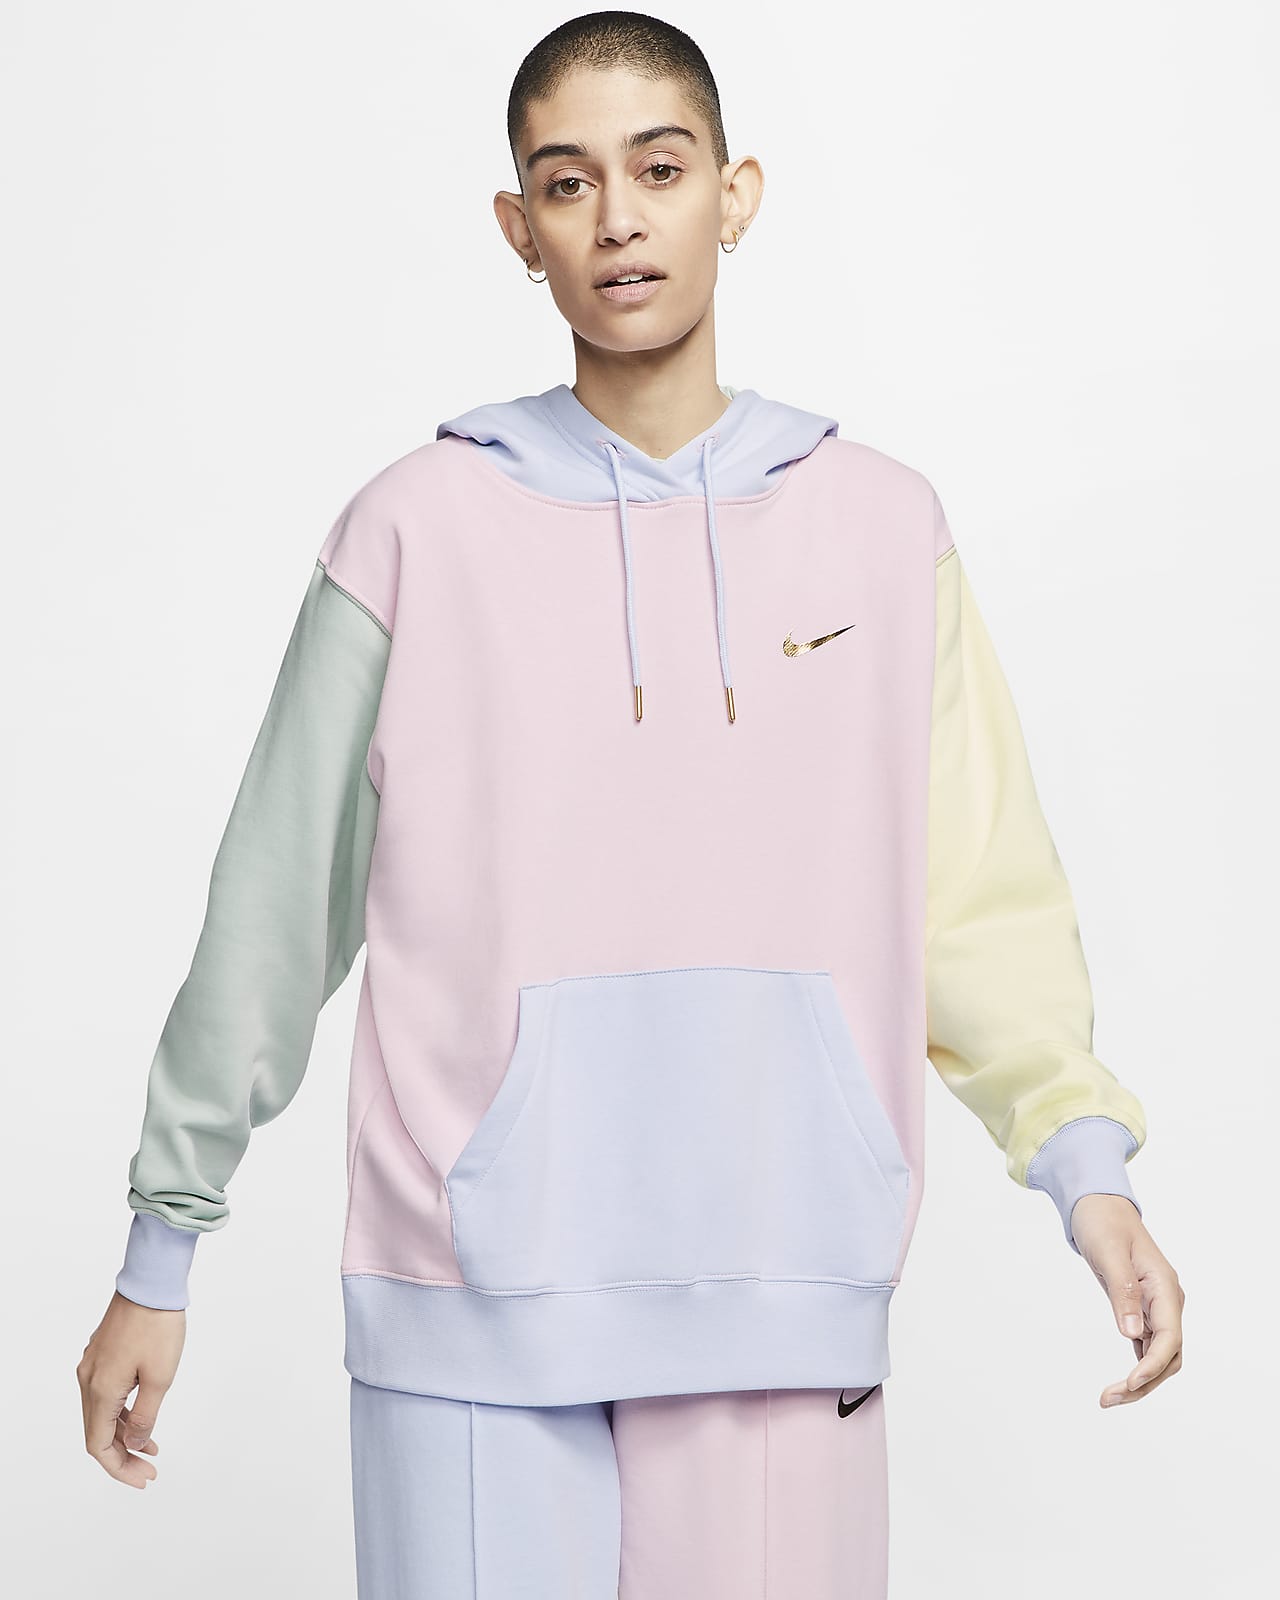 nike hoodie blue and pink